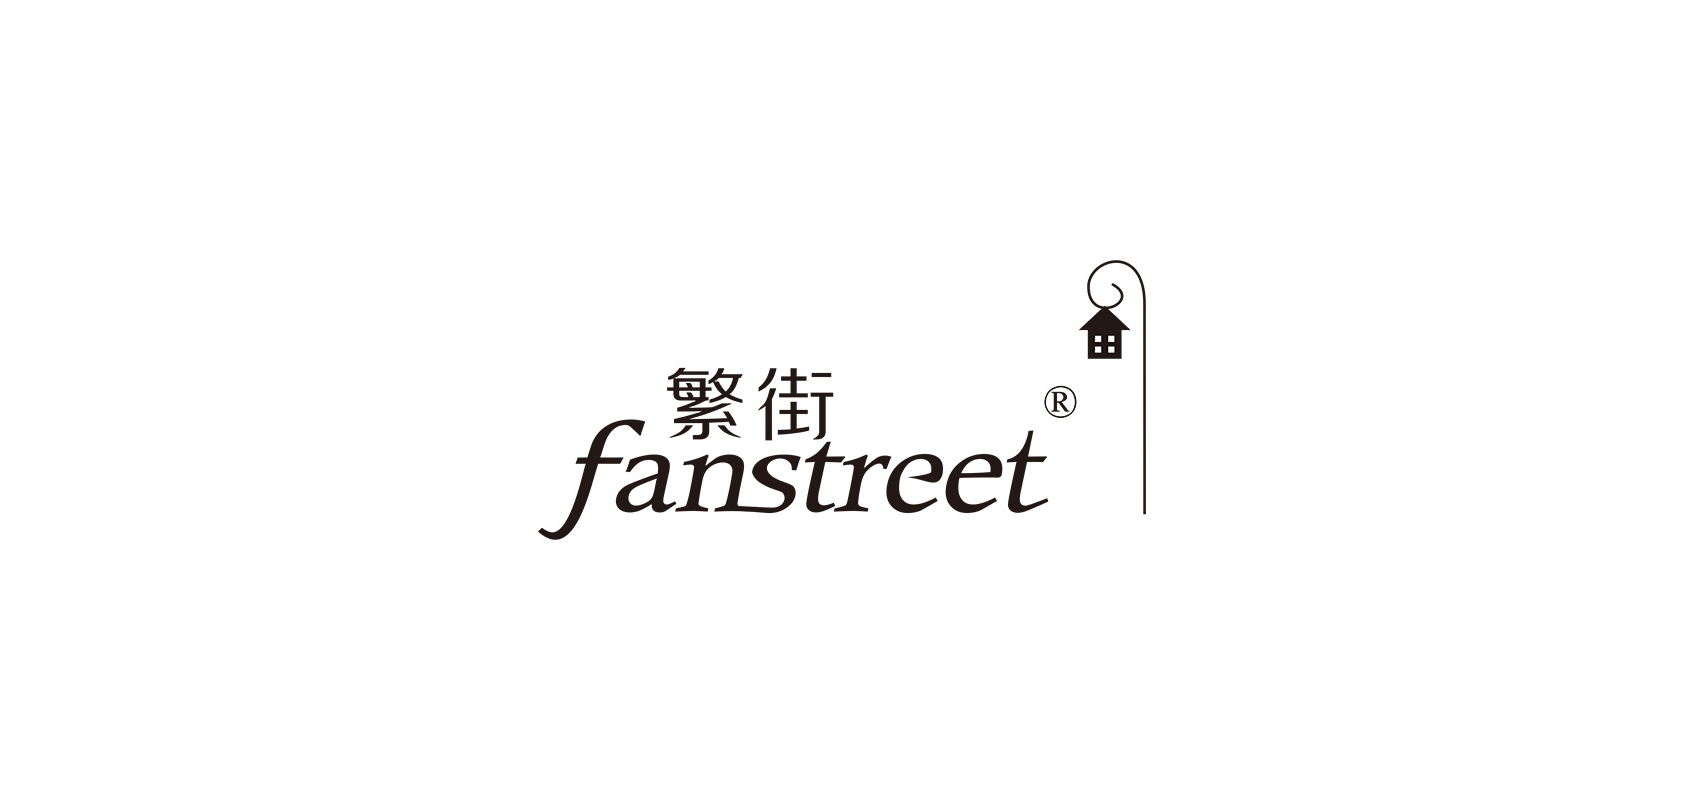 繁街品牌logo